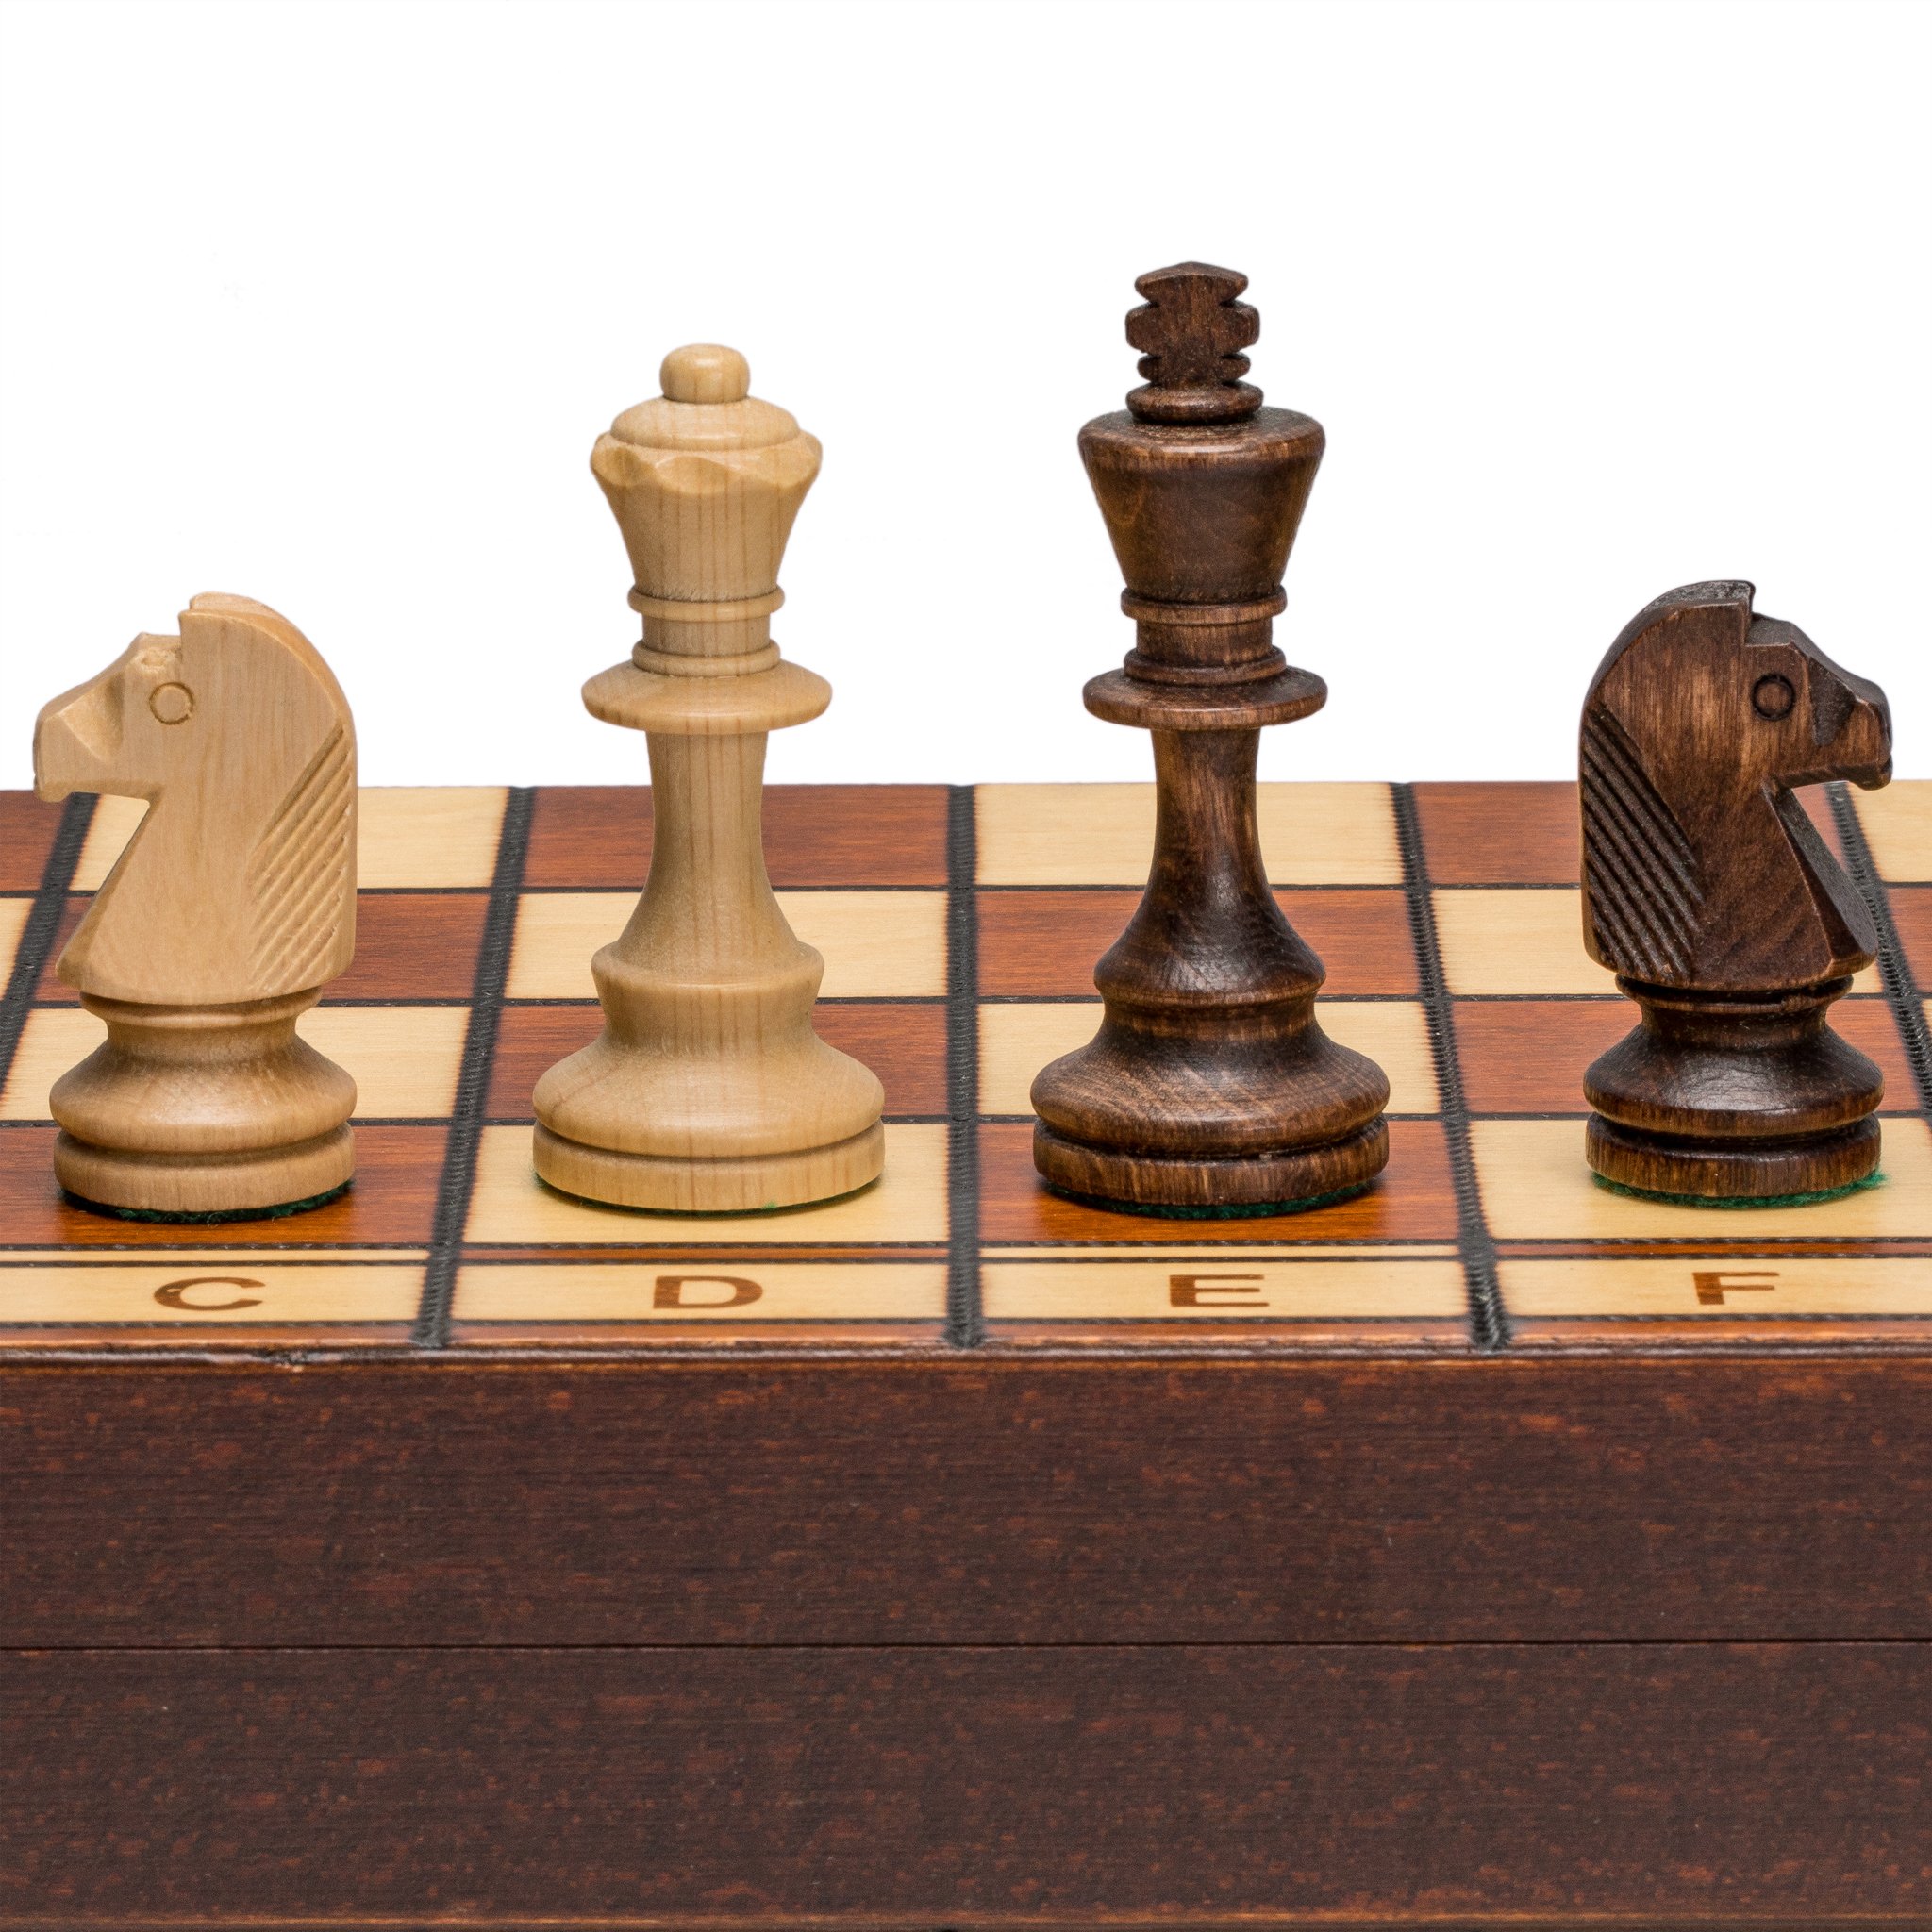 チェスセット Wegiel Handmade Jowisz Professional Tournament Chess Set - Wooden 16 Inch Folding Board With Felt Base & Hand Carved Chess Pieces - Compartment Inside The Board To Store Each Piece 